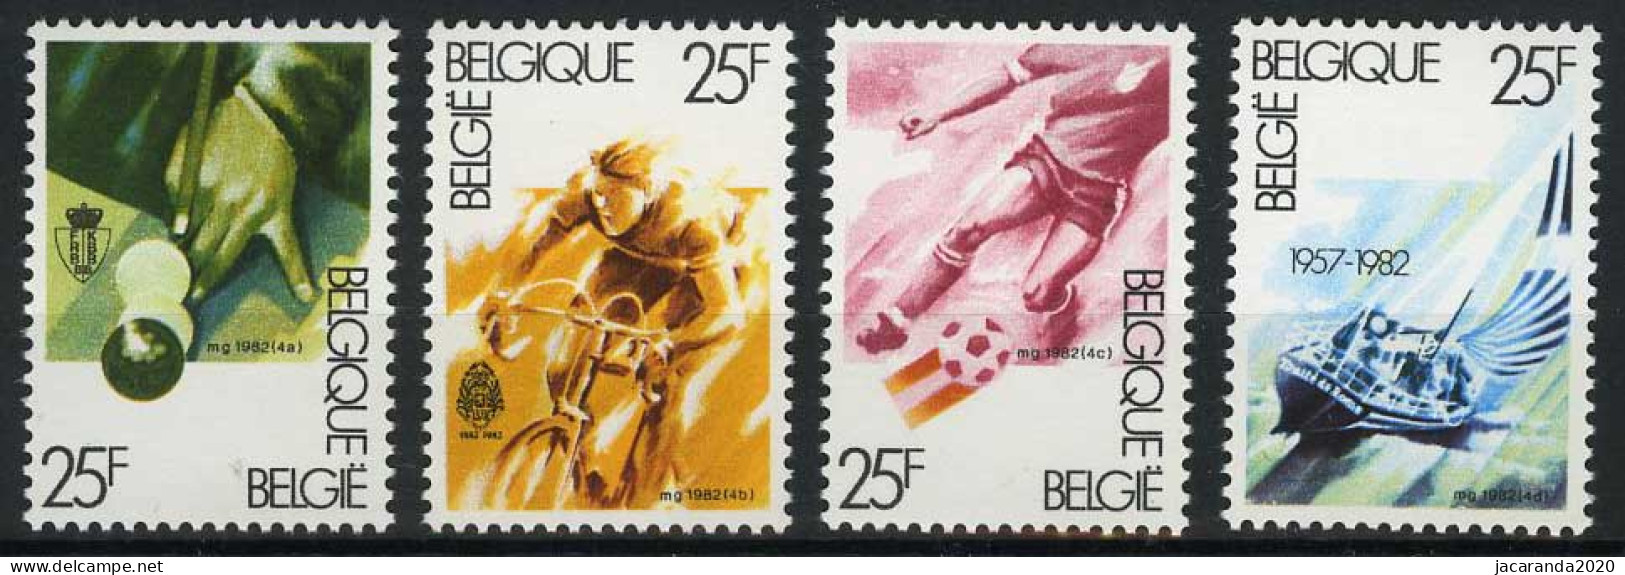 België 2043/46 - Sport - Biljarten - Wielrennen - Voetbal - Zeilschip - Billard - Cyclisme - Football - Voilier - Ongebruikt